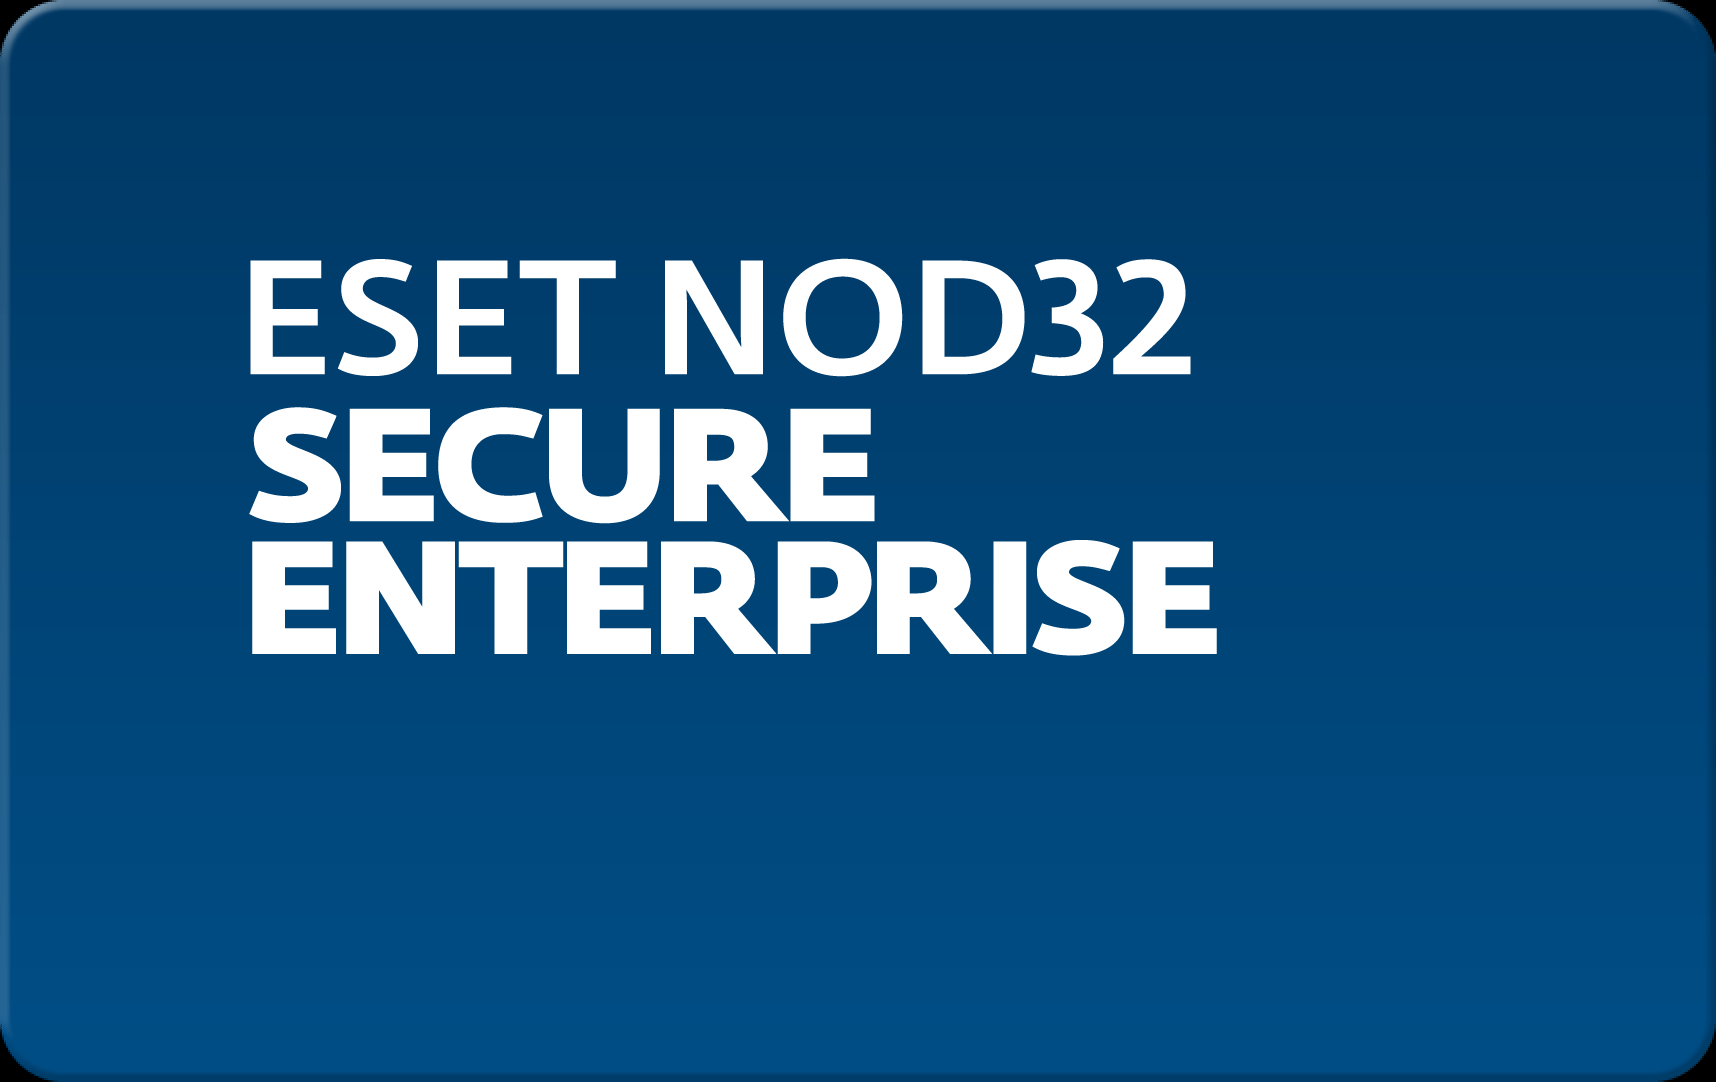        Eset NOD32 Secure Enterprise  154  NOD32-ESE-NS-1-154  #1